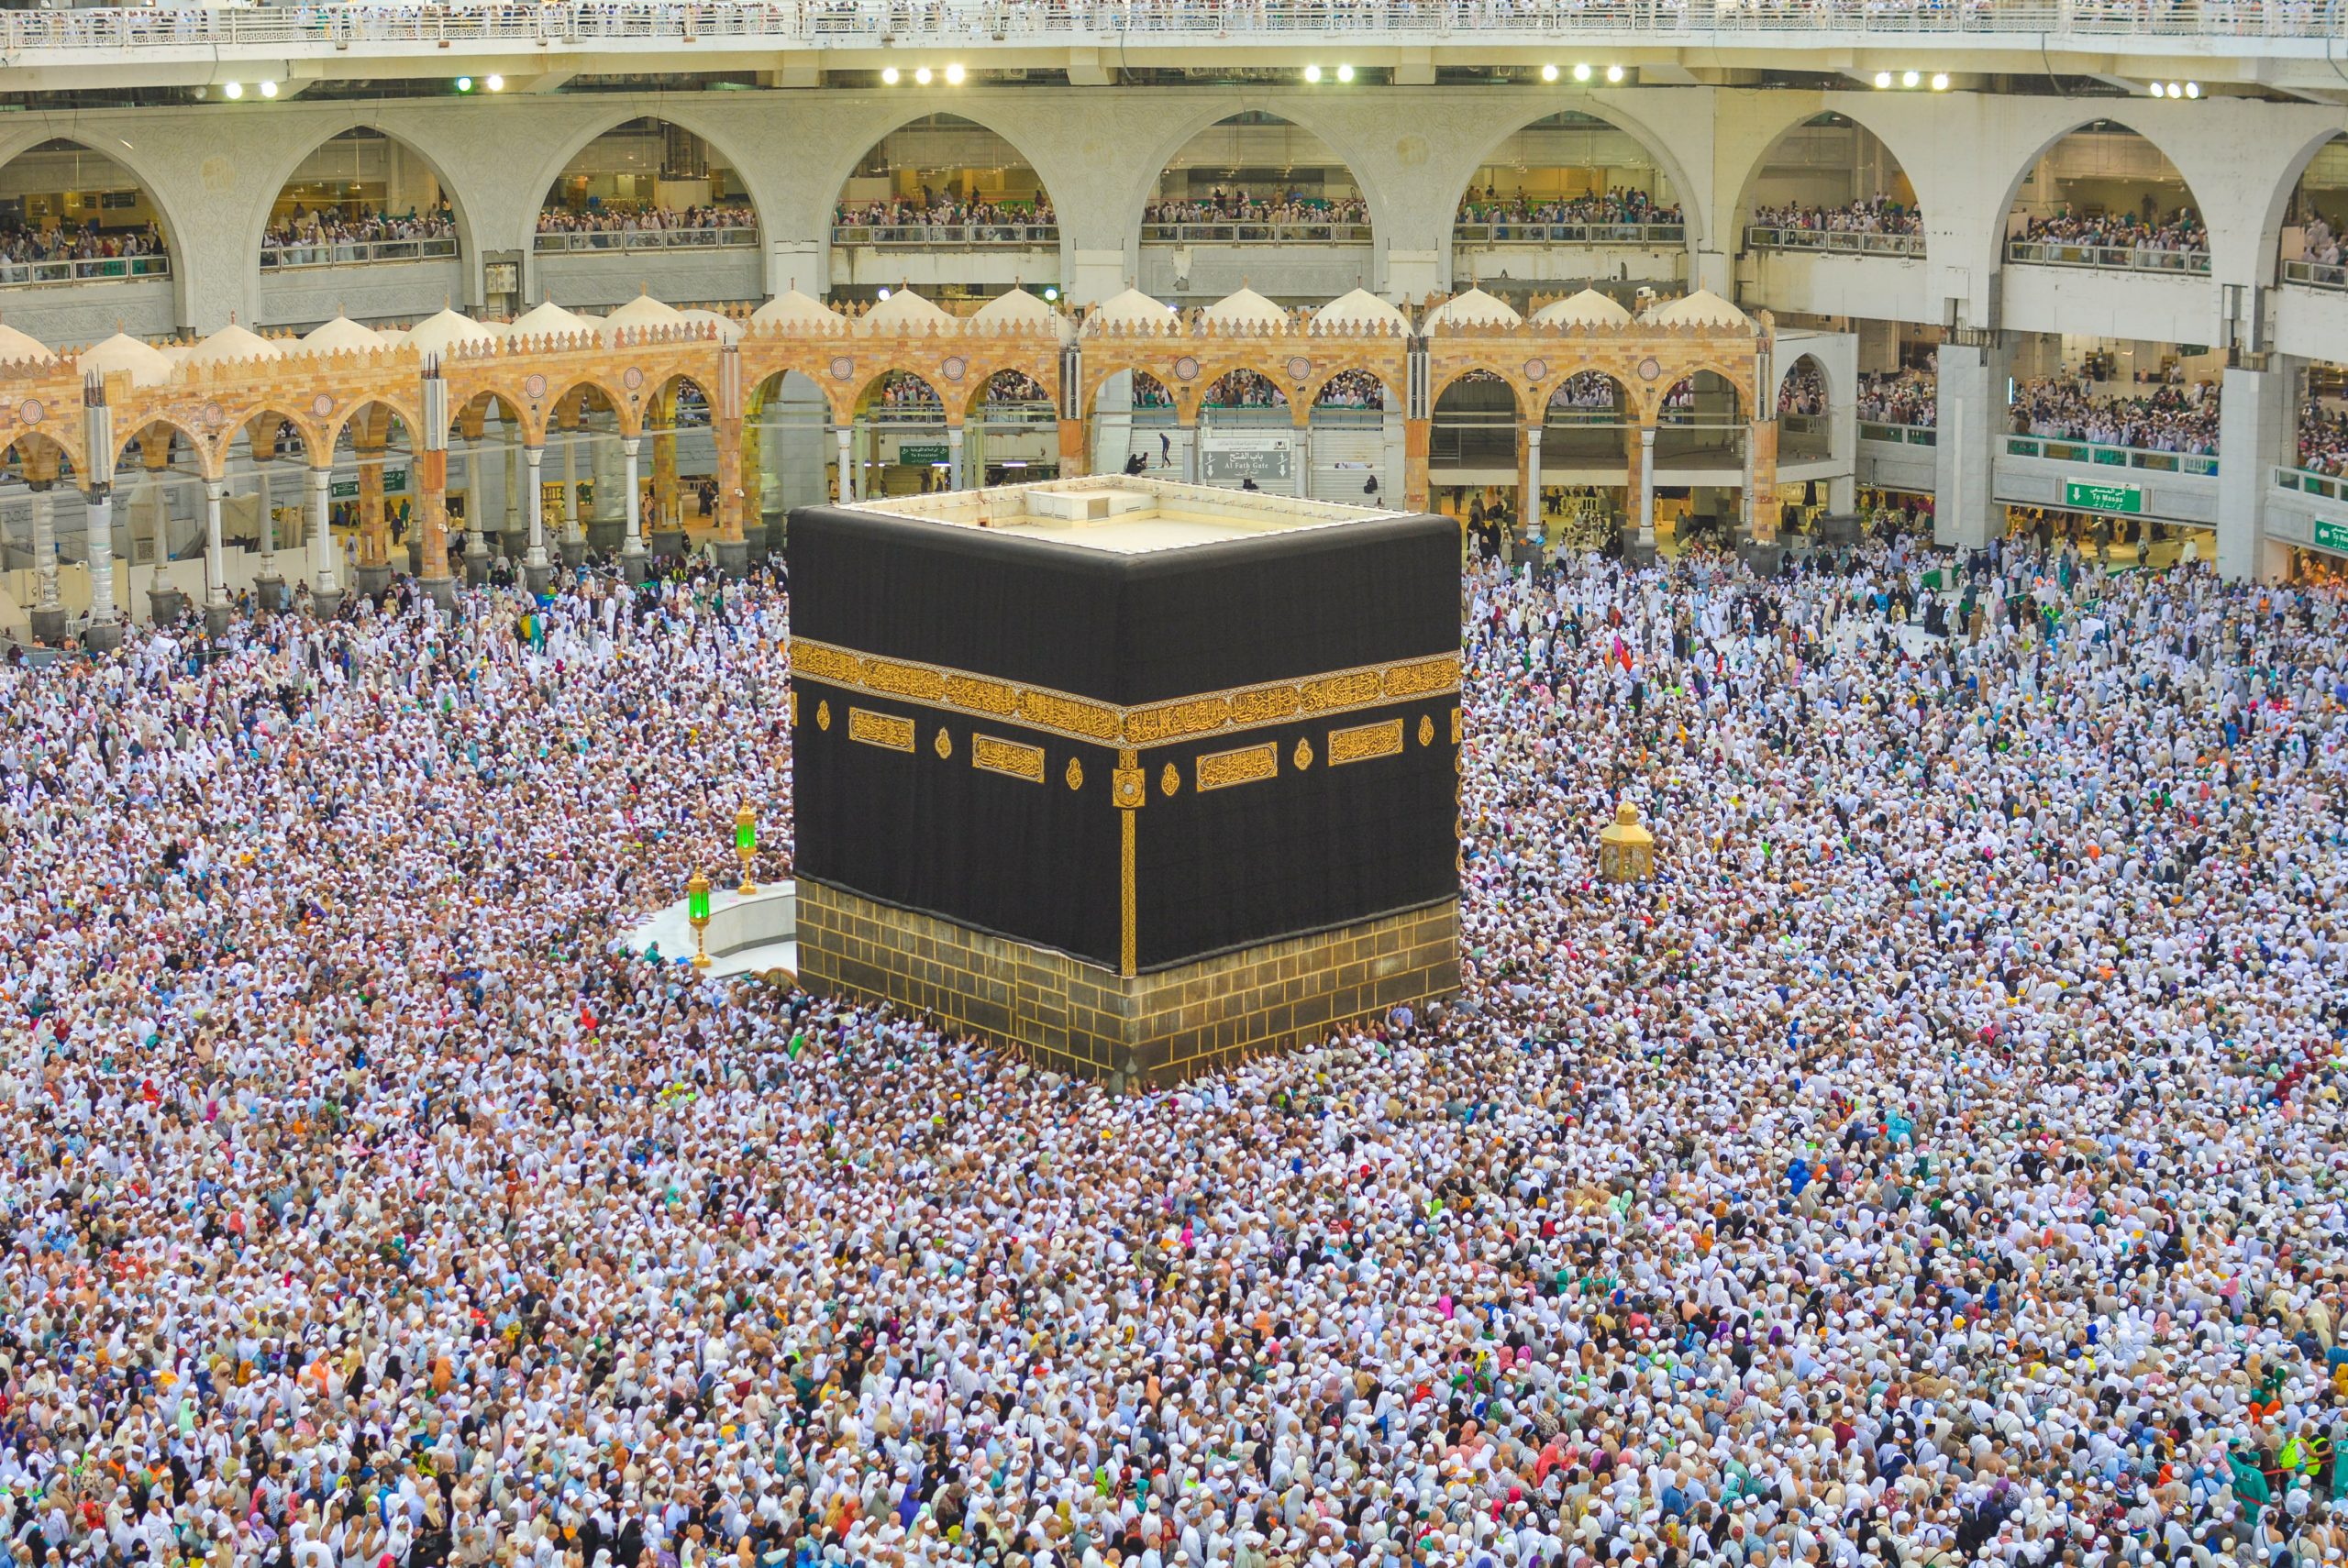 Amalan yang Pahalanya Setara Ibadah Haji dan Umroh